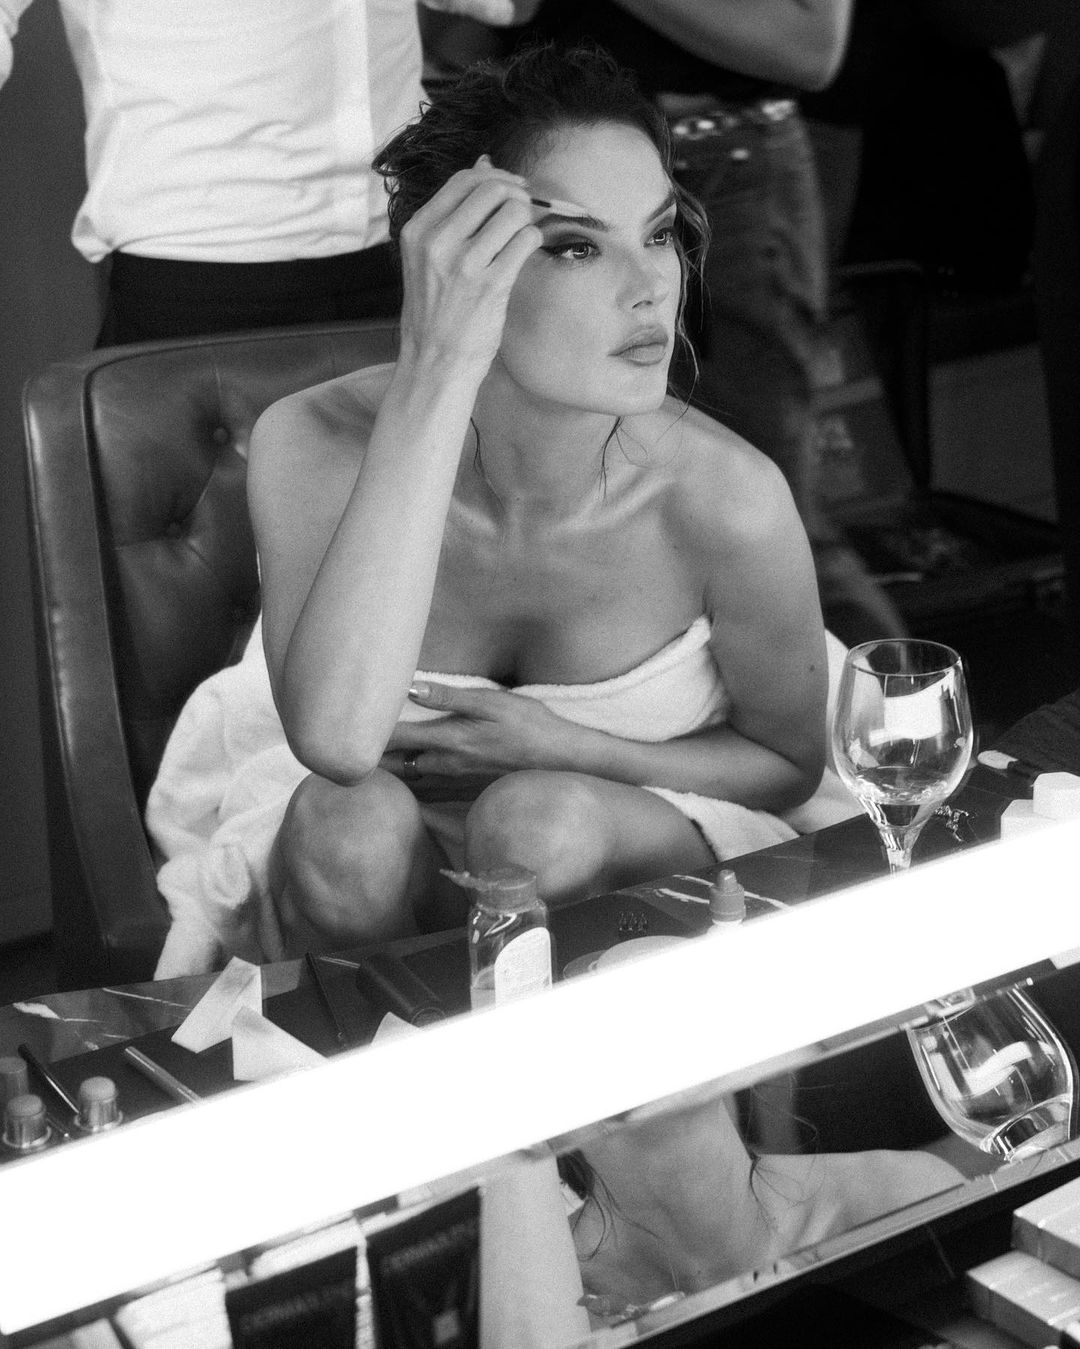 FOTOS Alessandra Ambrosio se est poniendo descarada en el vestuario! - Photo 10